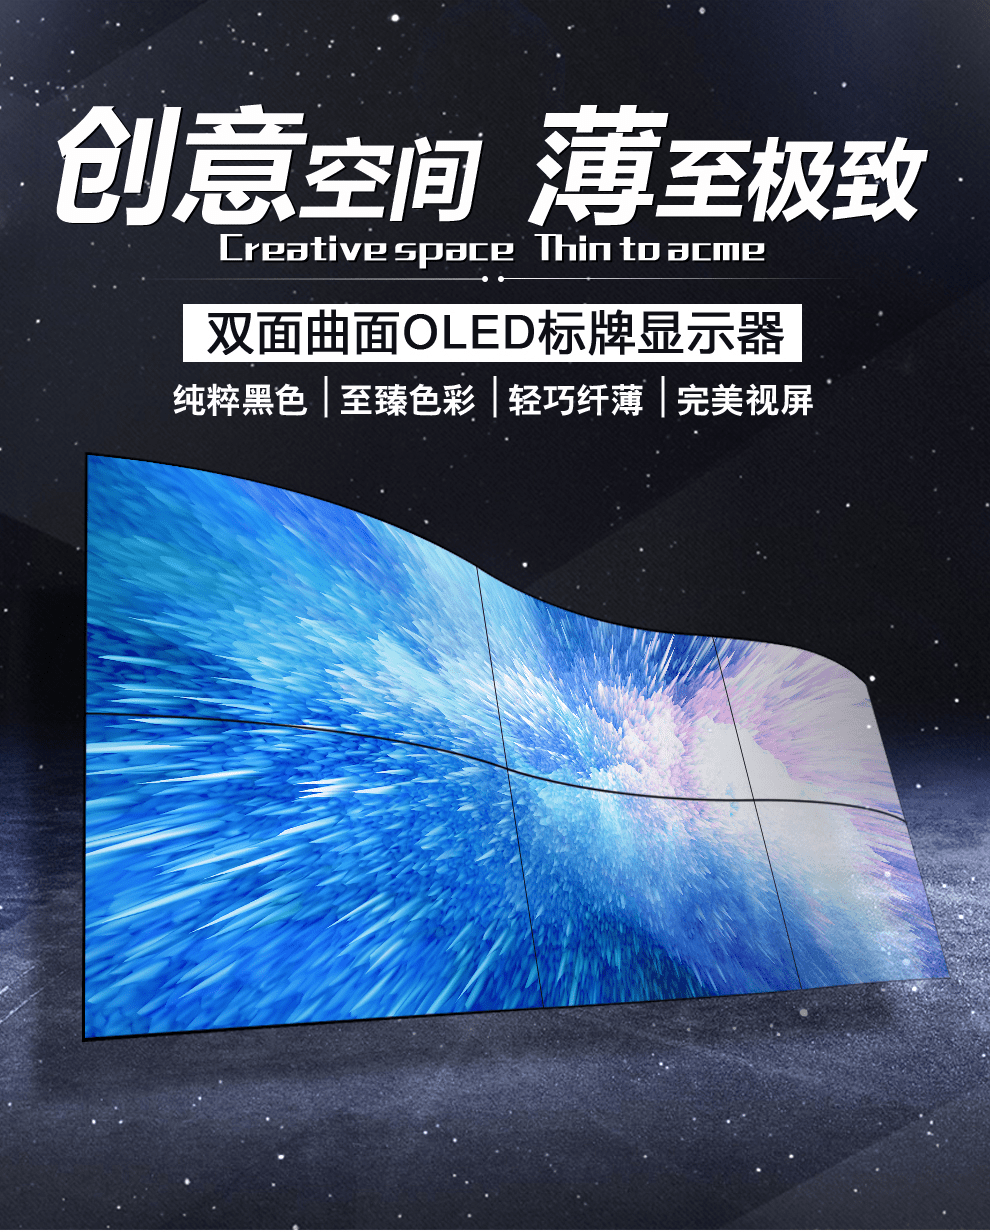 广州晶笛诺-OLED显示屏